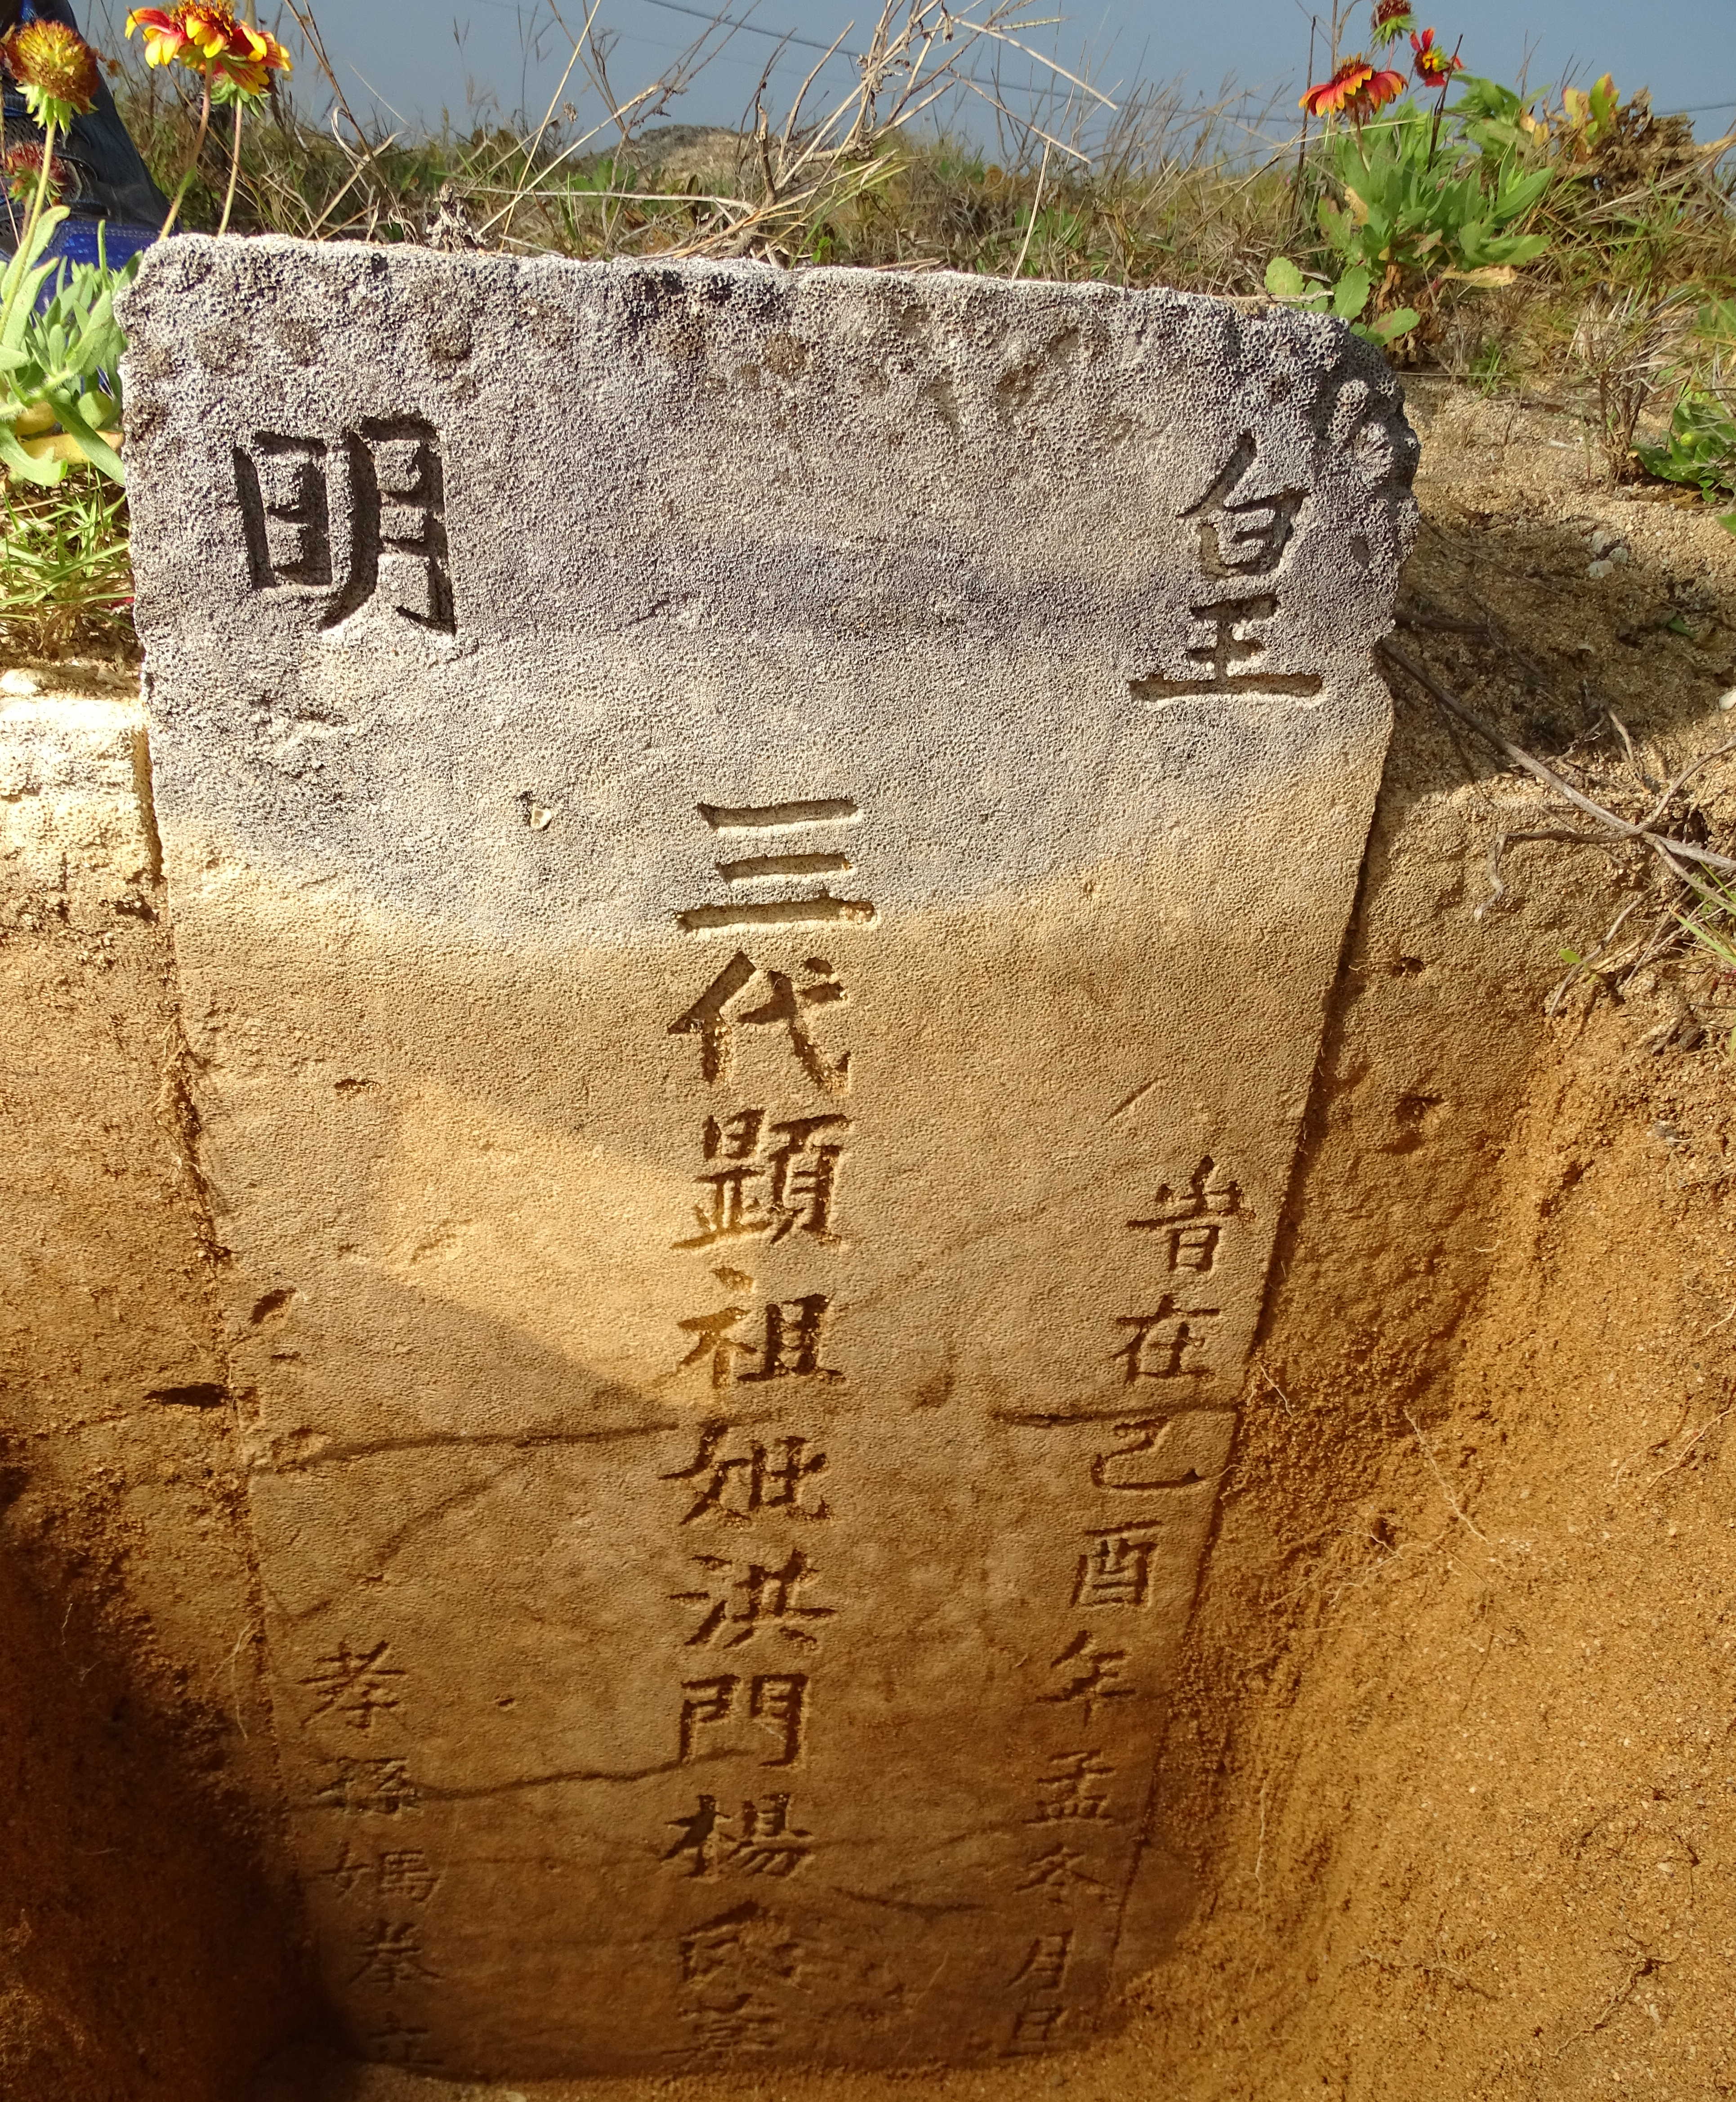 : Ein Fokus mit einem Verweis auf die Ming
                Dynastie (皇明) auf einem Grabstein auf den Penghu-Inseln von 1669,
                während in China schon die Qing Dynastie herrscht.